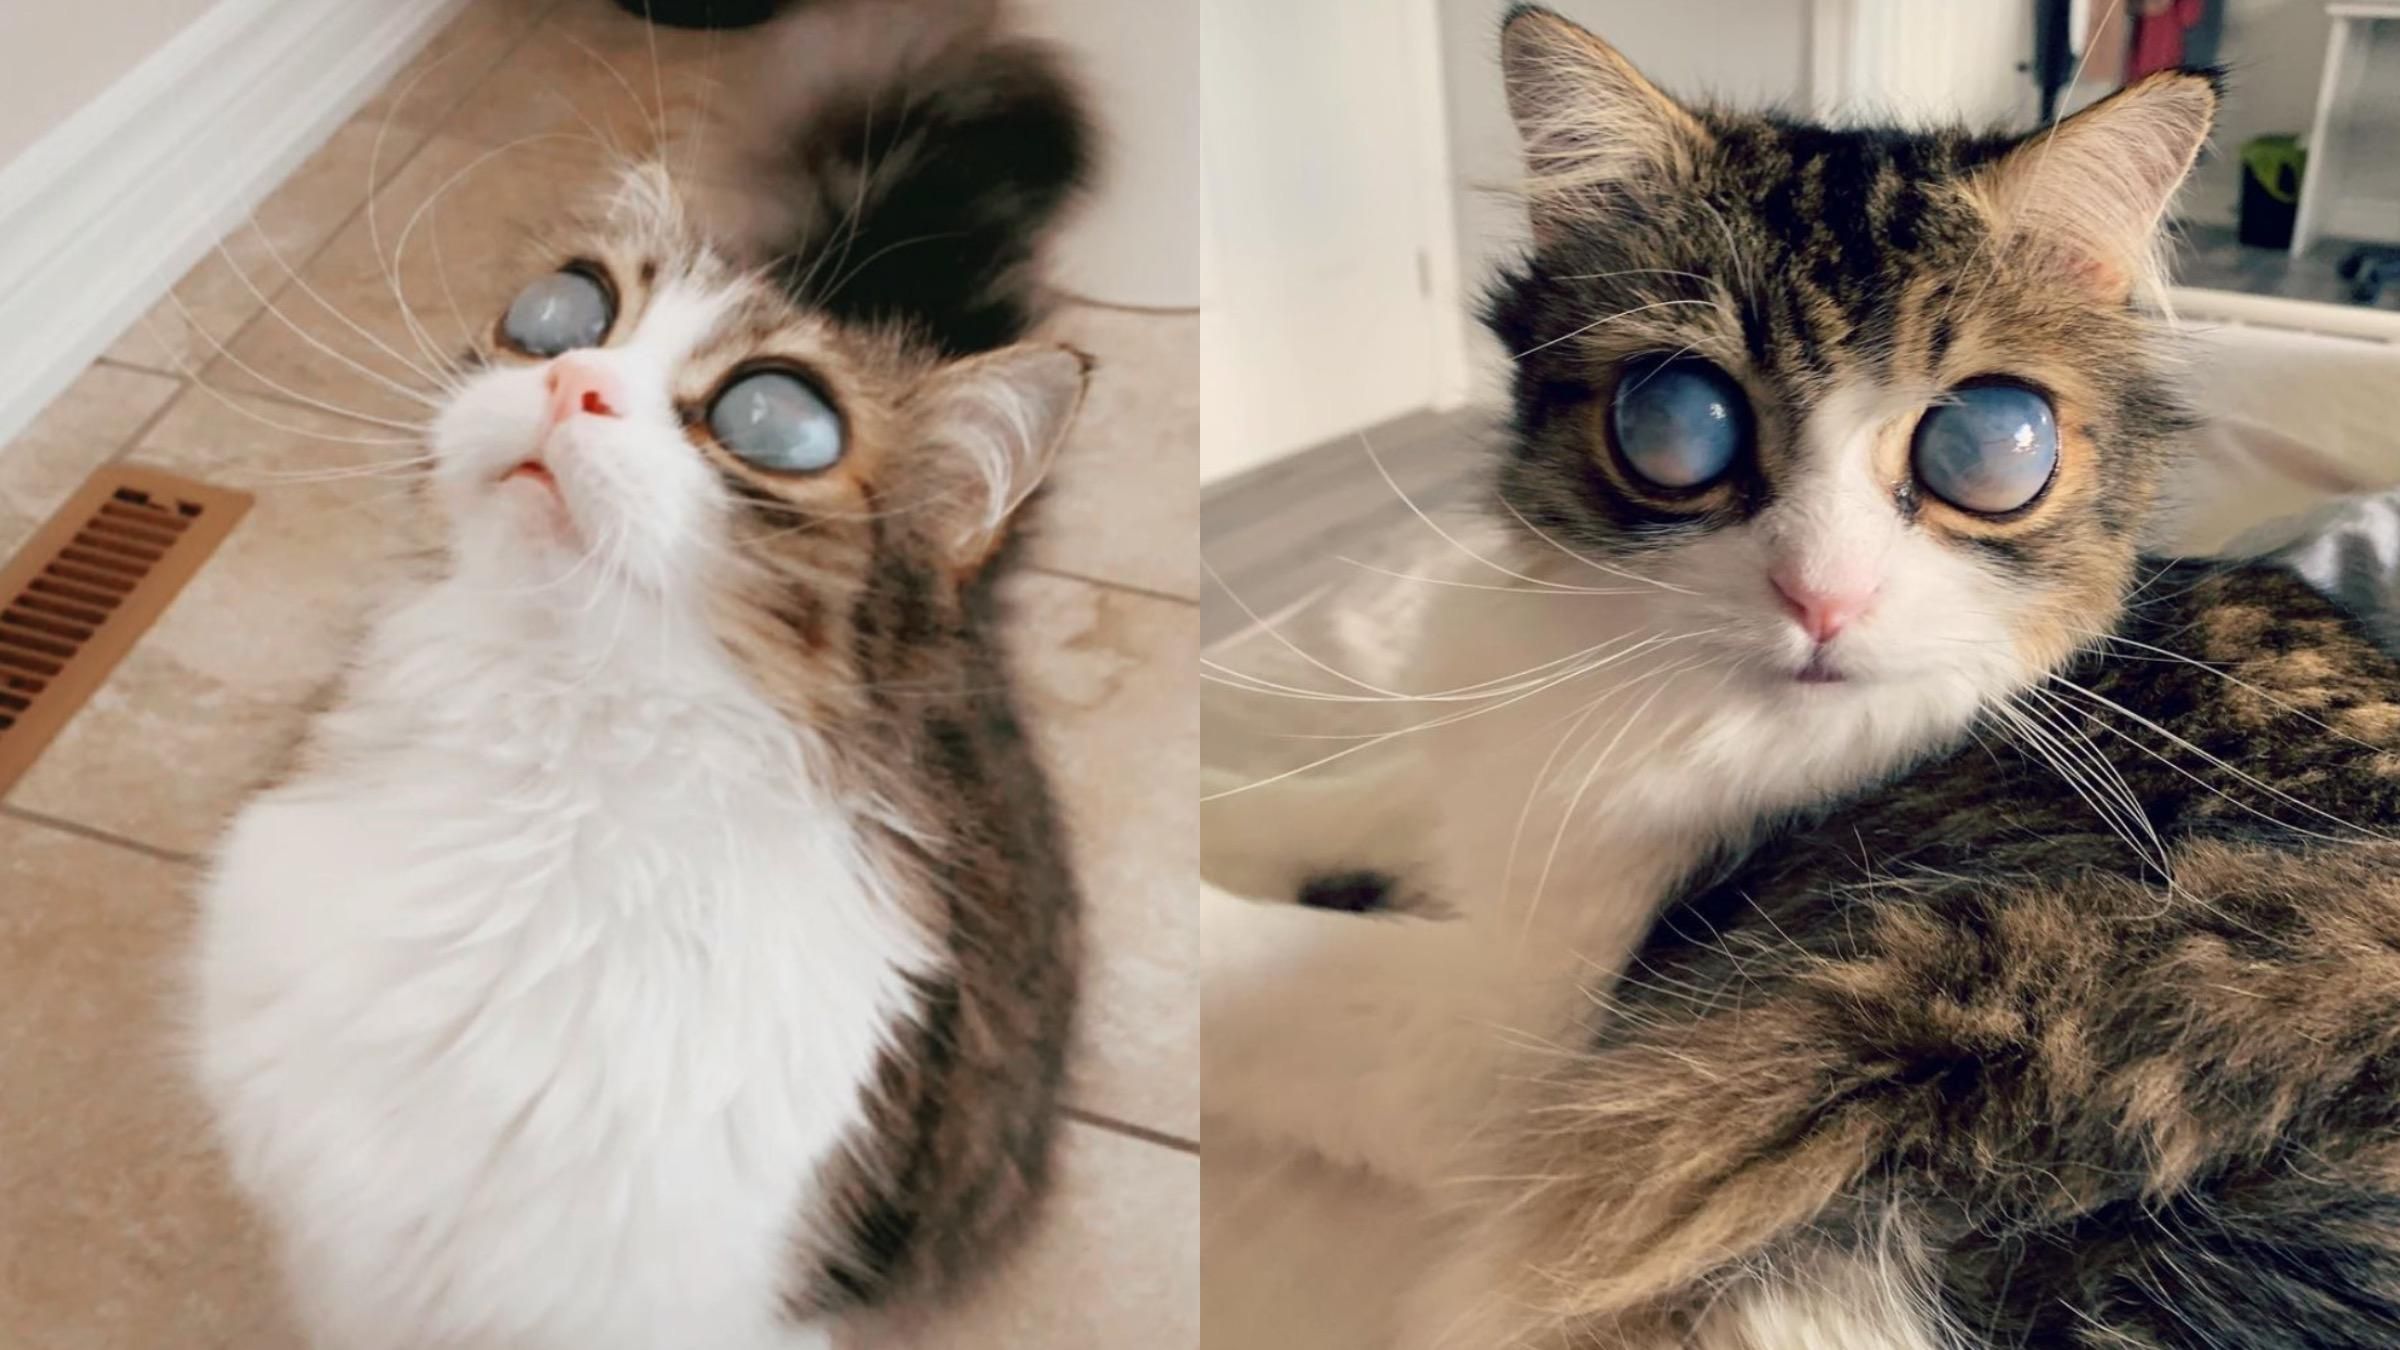 "Космические" глаза: слепой кот стал известен из-за особенности его внешности - Pets